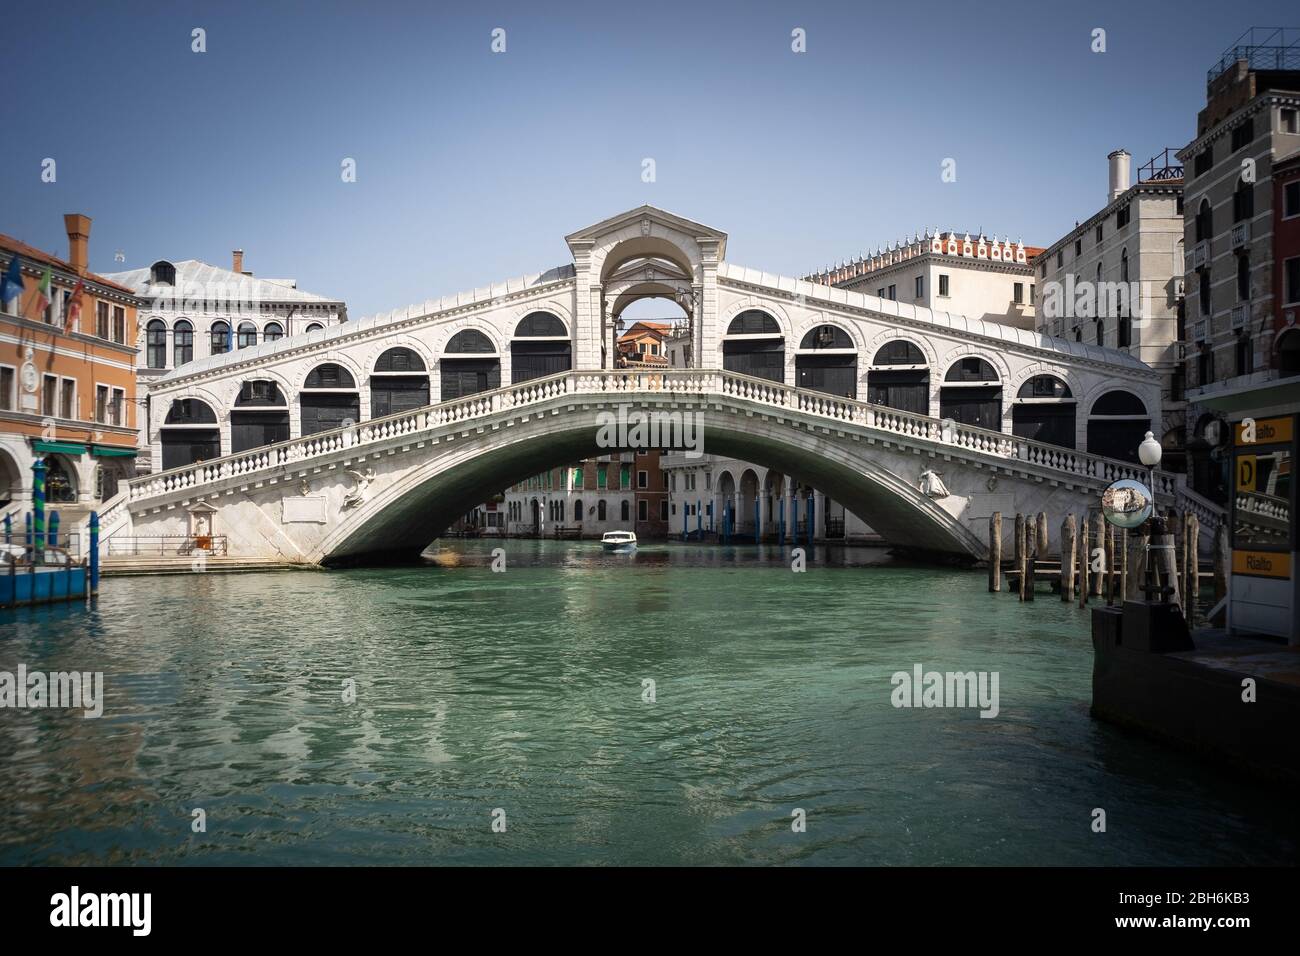 VENEZIA, ITALIA - APRILE 2020: Canali calmi e riflessi del ponte di Rialto durante la chiusura nazionale per la pandemia Covid-19. Foto Stock